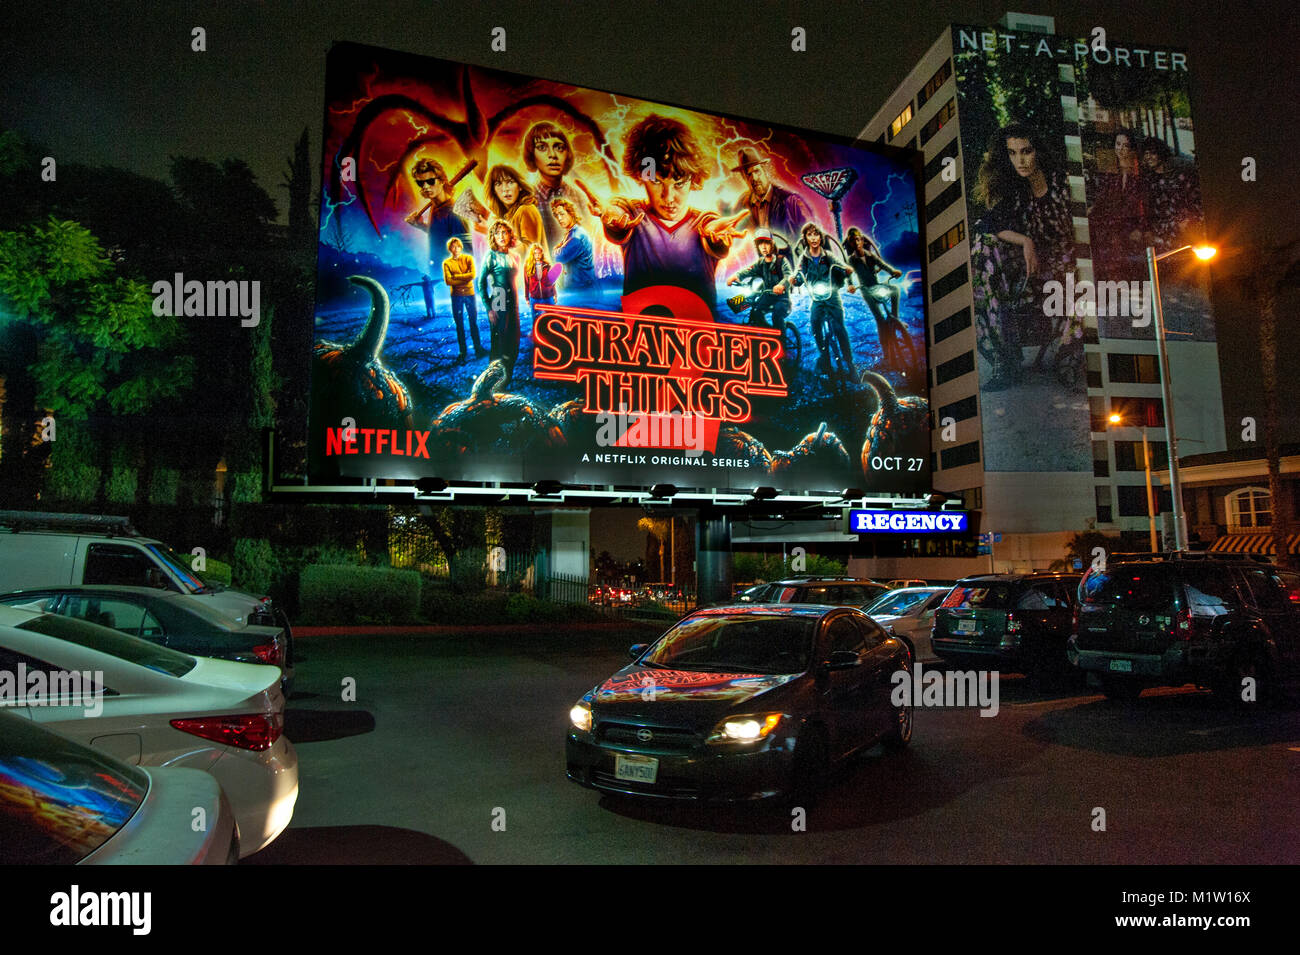 Netflix billboard on the Sunset Strip Stock Photo